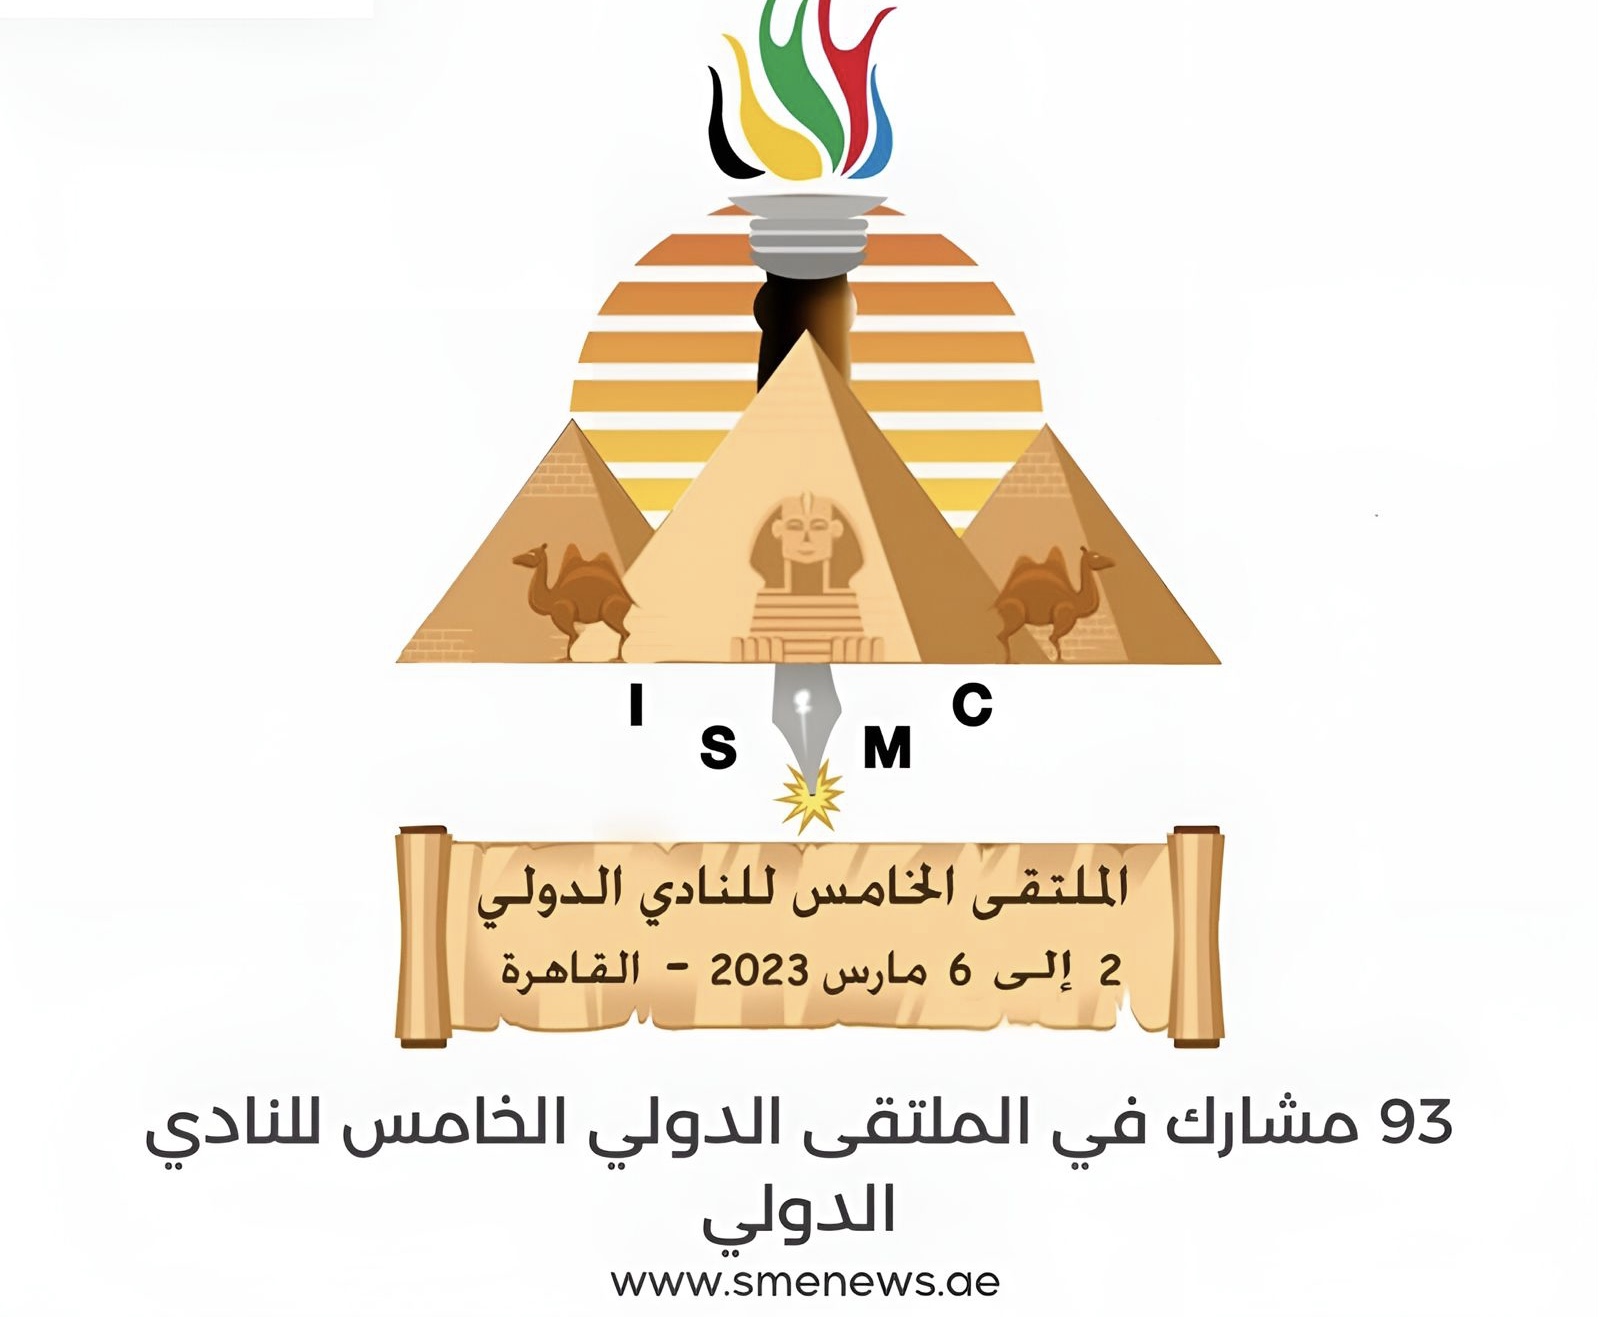 مصر تحتضن الملتقى الدولي الخامس للنادي الدولي